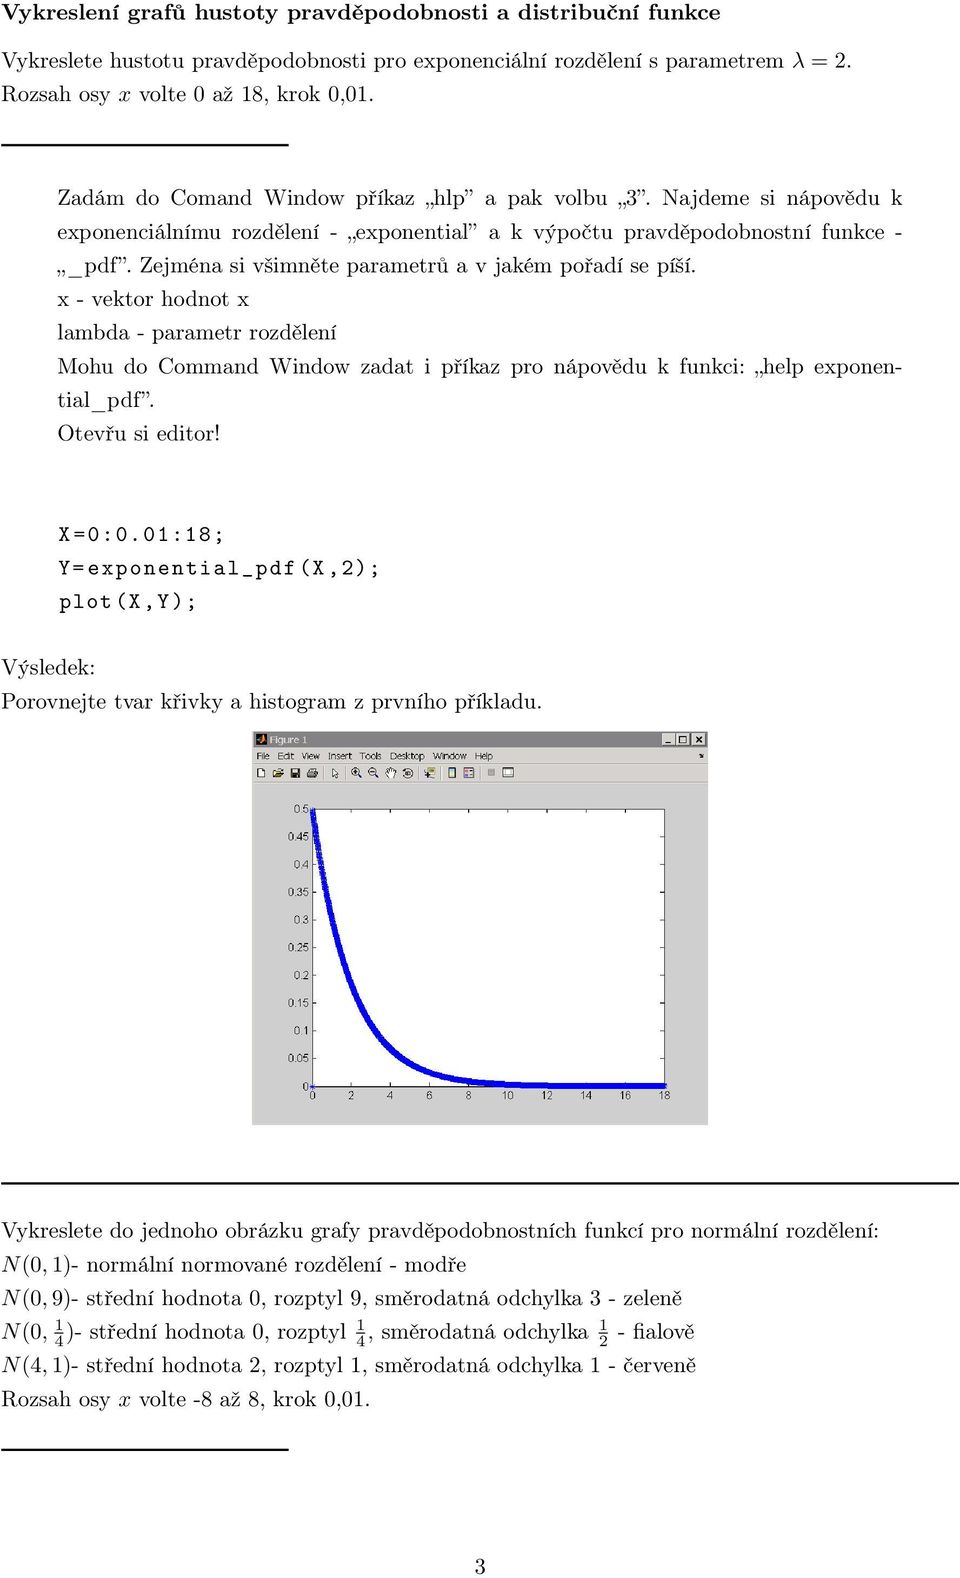 Zejména si všimněte parametrů a v jakém pořadí se píší. x - vektor hodnot x lambda - parametr rozdělení Mohu do Command Window zadat i příkaz pro nápovědu k funkci: help exponential_pdf.